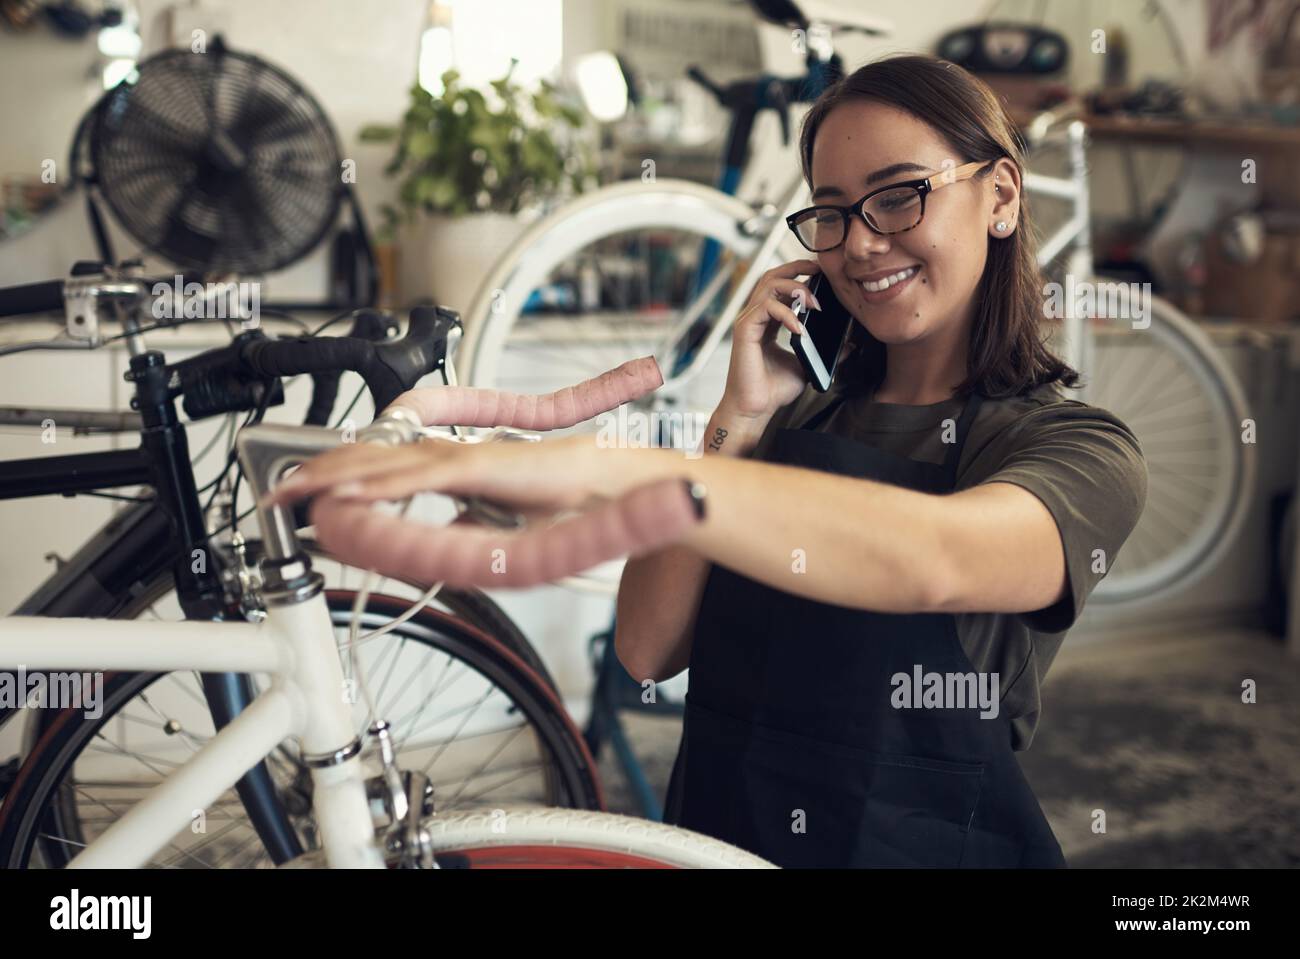 J'ai préparé votre vélo pour le ramassage. Photo d'une jeune femme attrayante debout seule dans son magasin et en train de réparer une roue de vélo tout en utilisant son téléphone portable. Banque D'Images